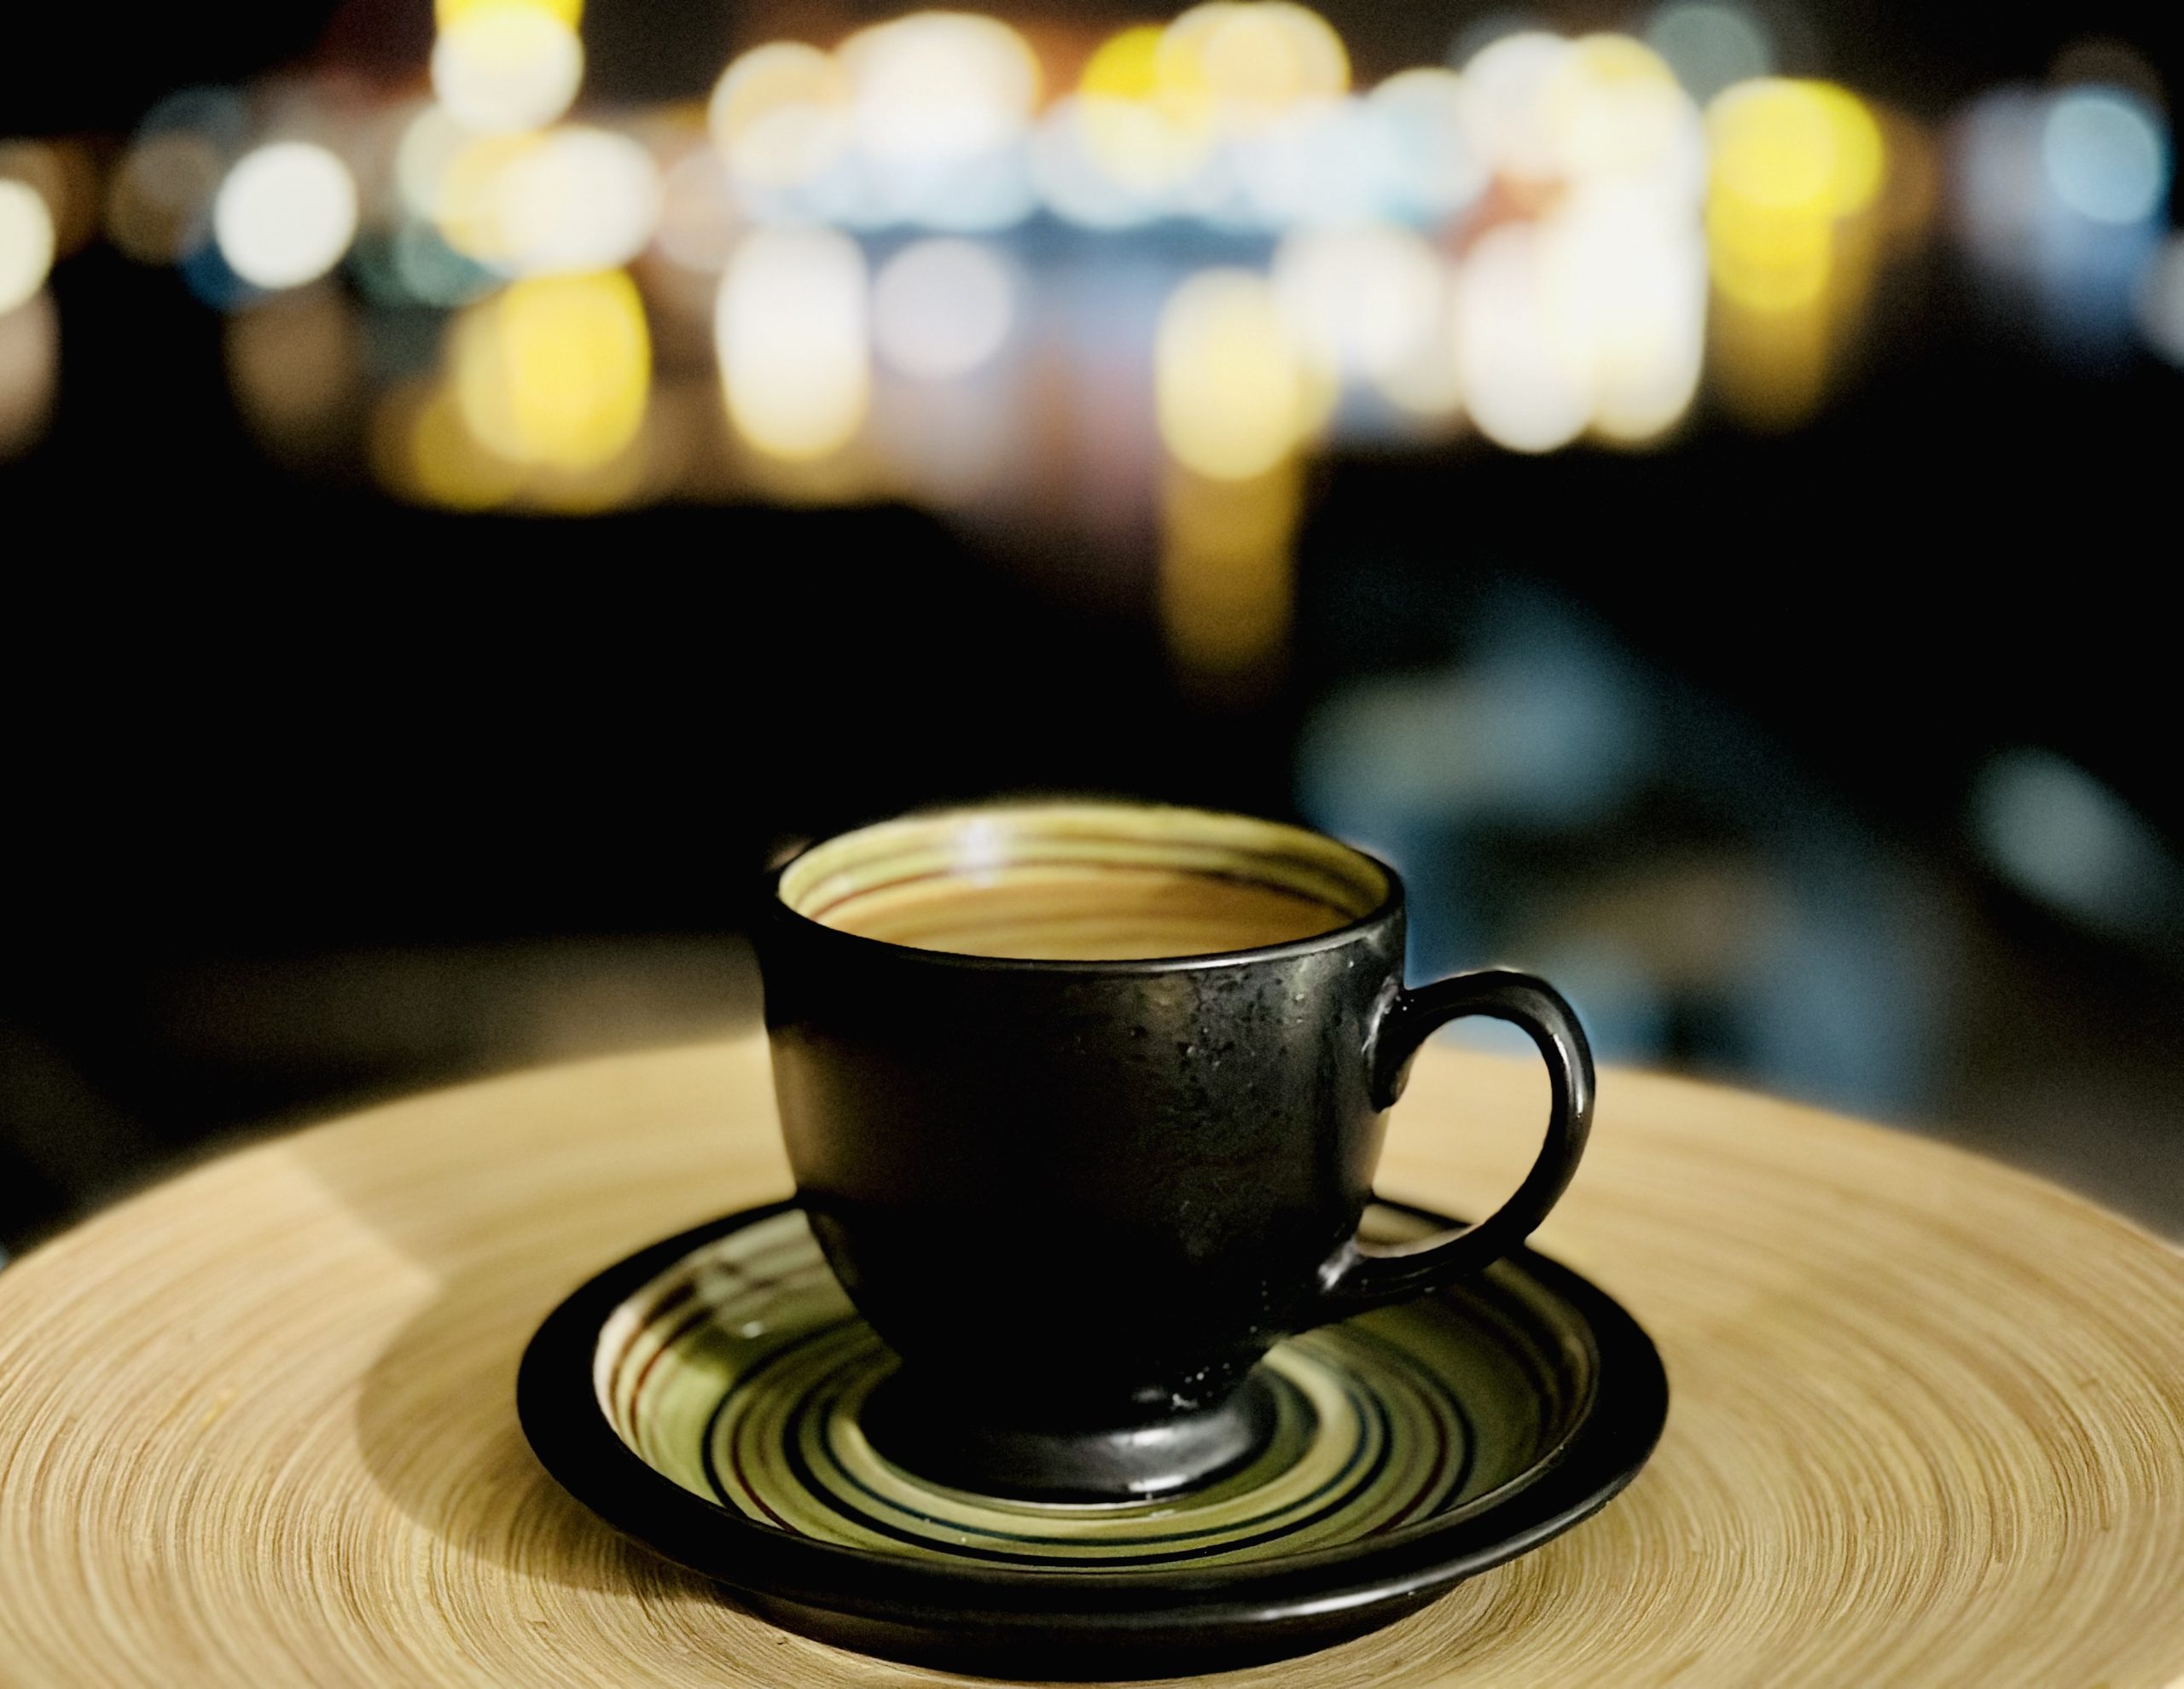 單品咖啡 淺度烘焙 風味描述 淺烘焙 中烘焙 杯測 Single Origin Coffee Light Roast Flavor Description Light Roast Medium Roast Cupping